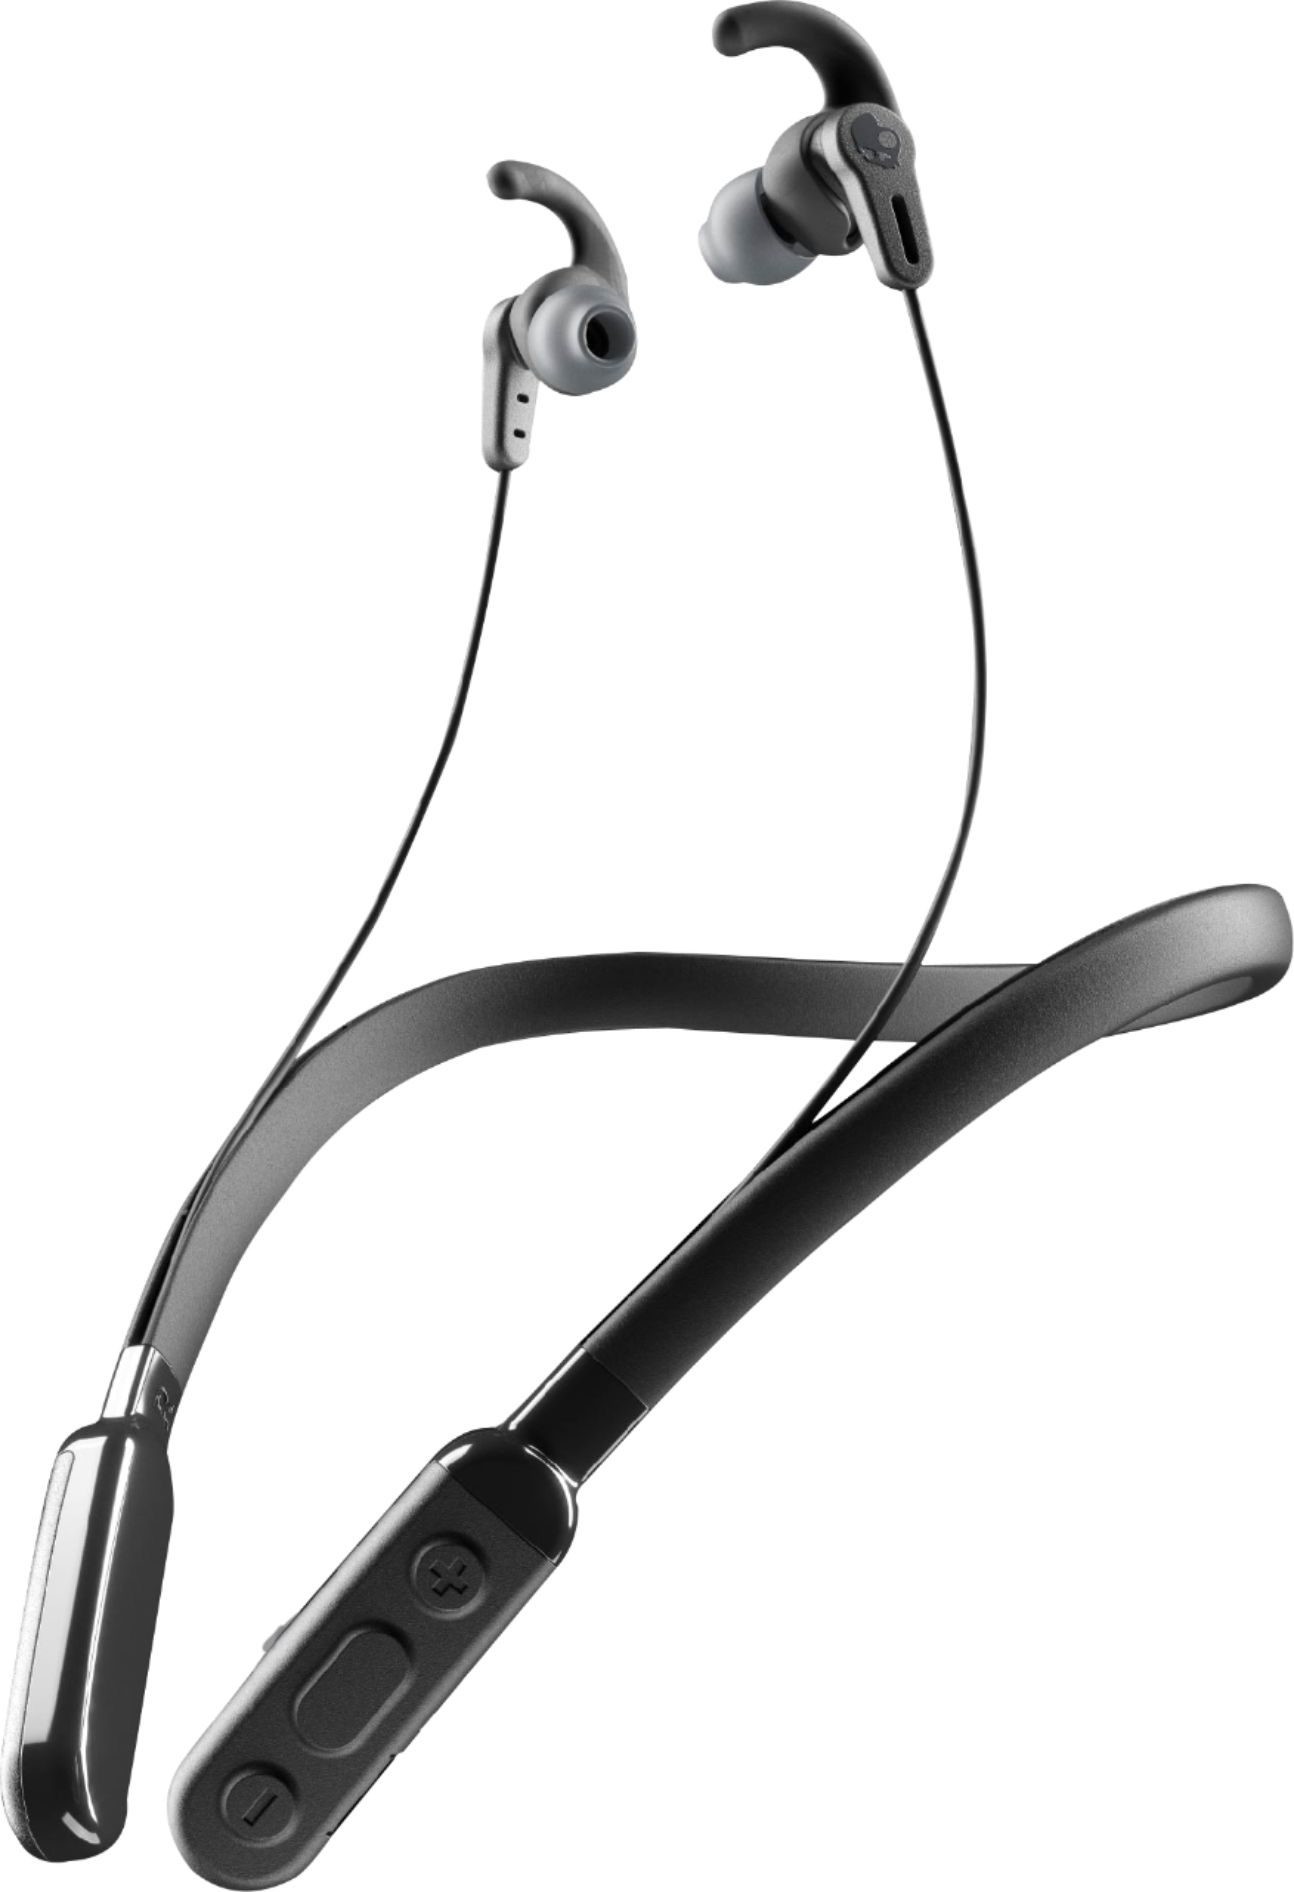 Sage Predict order Skullcandy Ink'D+ Active Wireless Headphones Black S2MHW-M448 - Best Buy